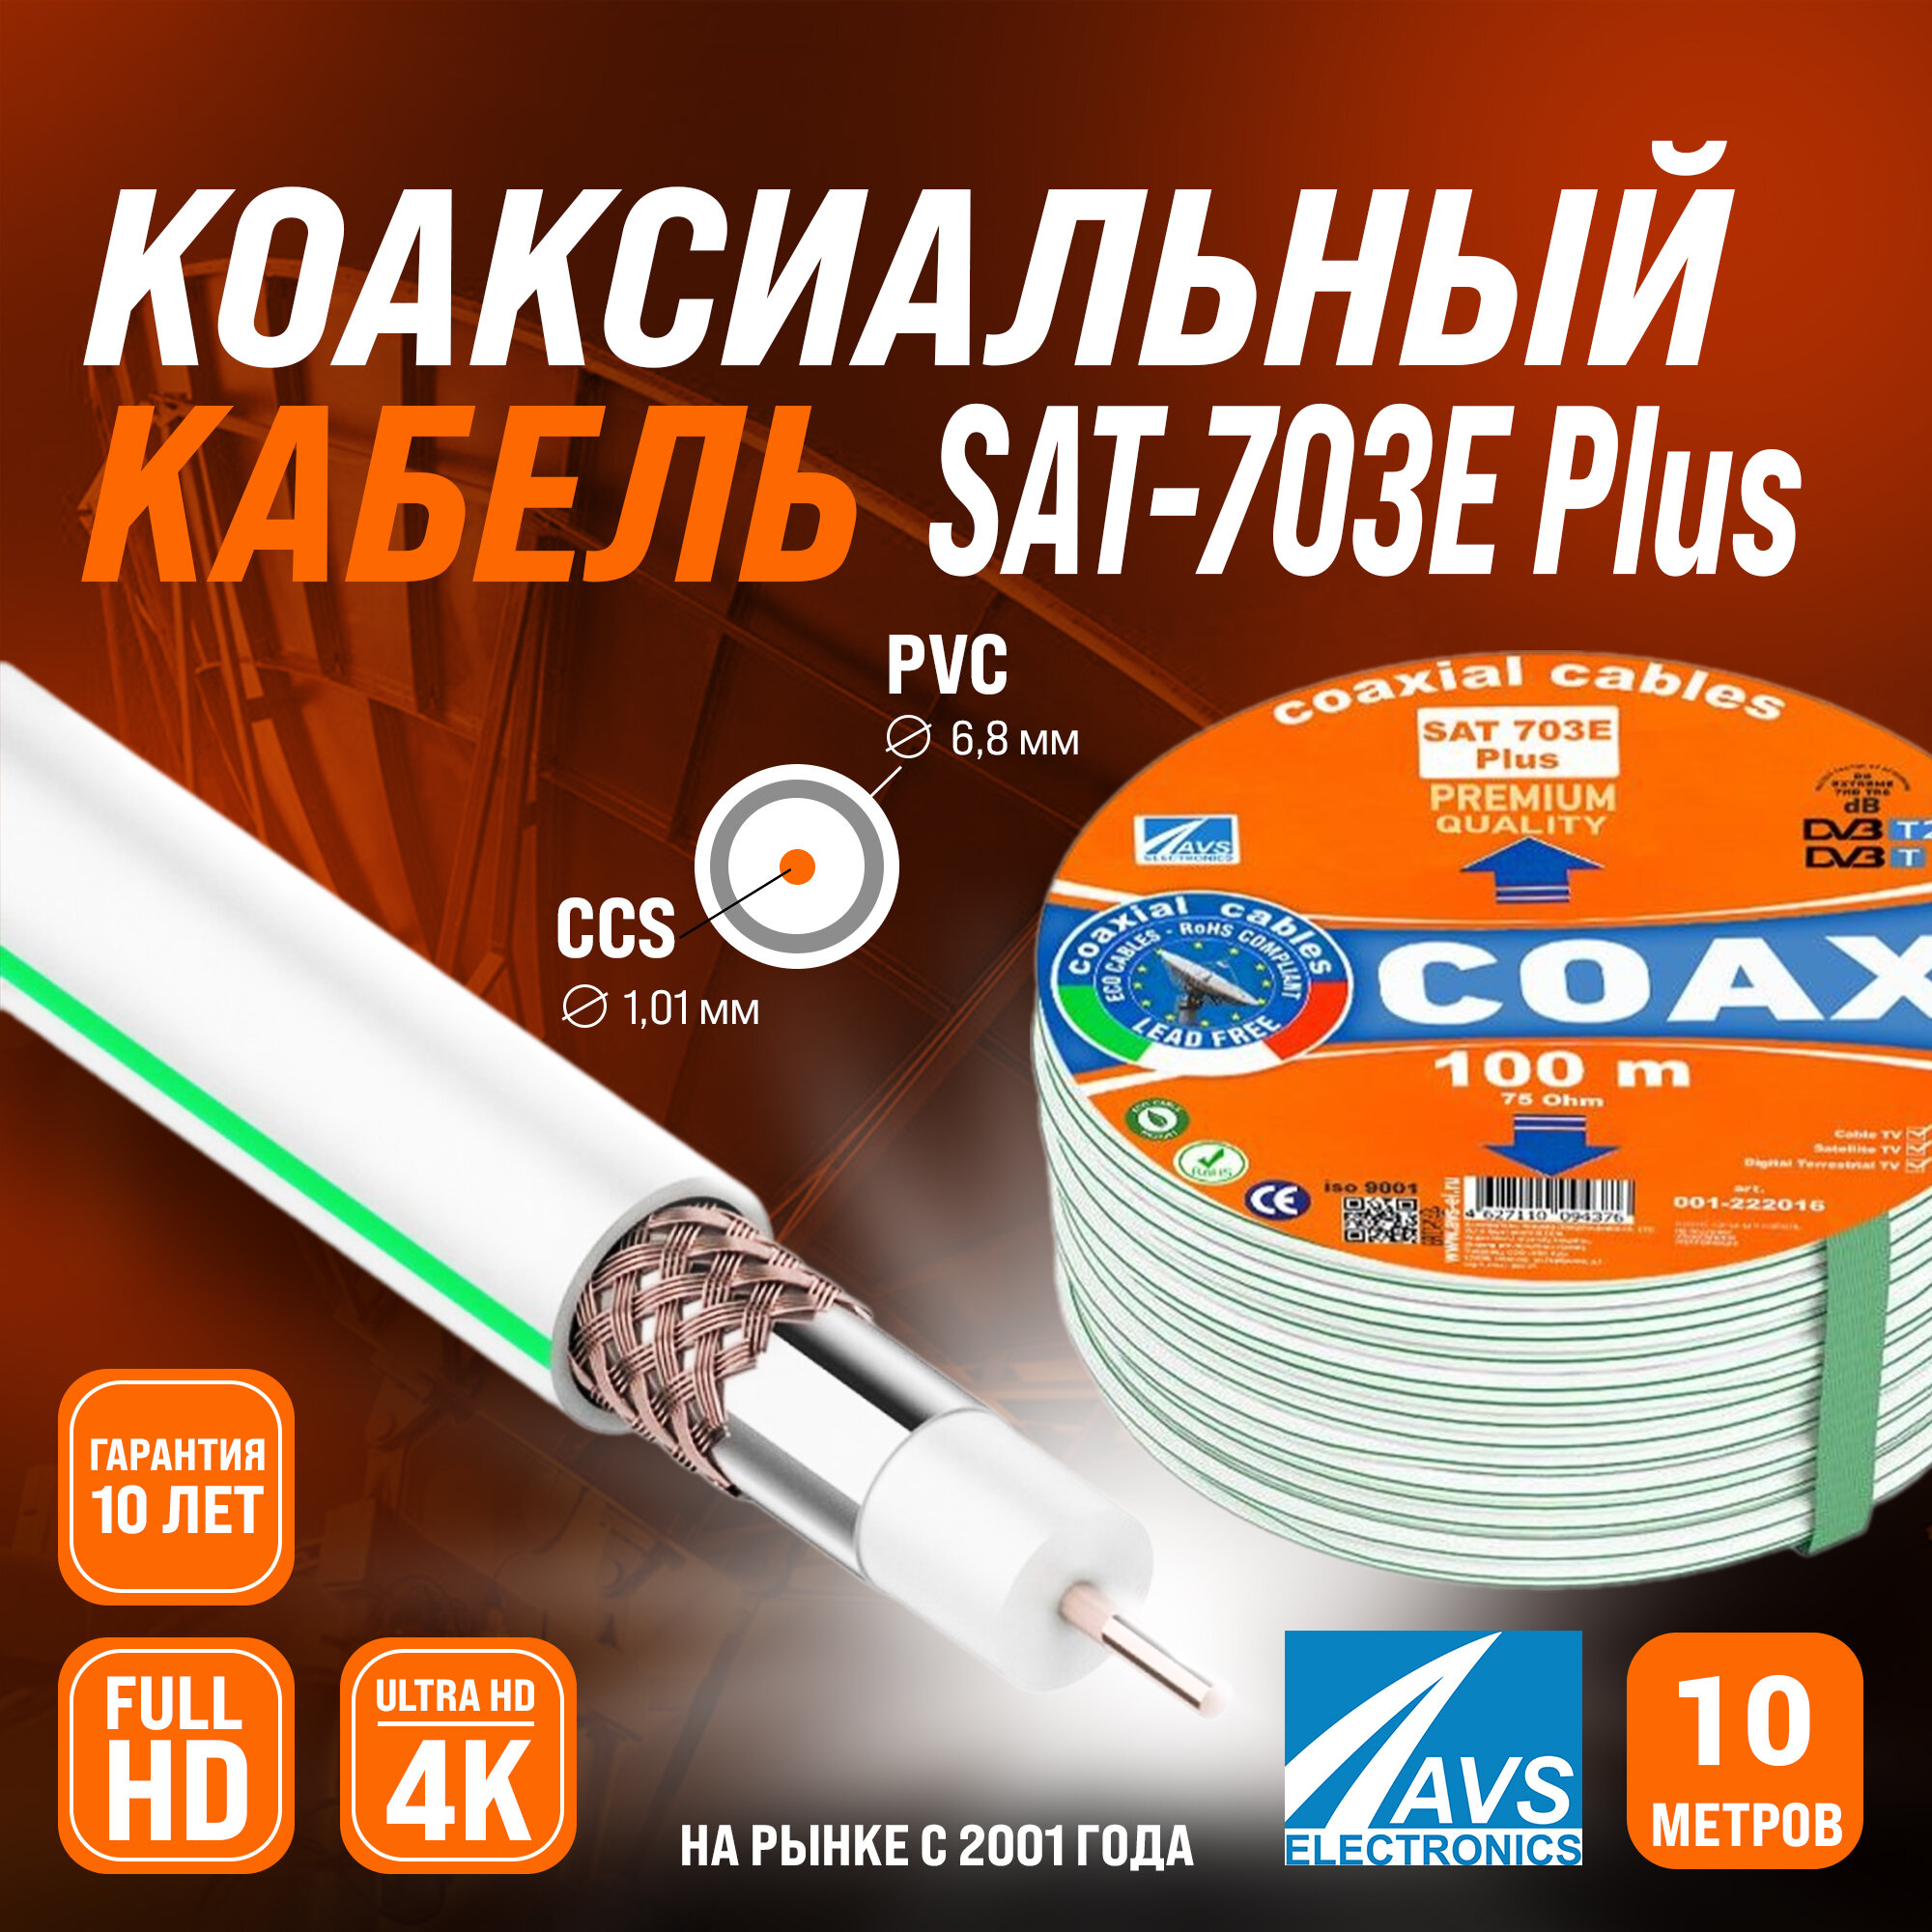 Коаксиальный телевизионный кабель 10 м SAT 703E Plus CCS AVS Electronics антенный провод для спутниковой тарелки, цифрового, эфирного тв 10 метров 001-222016/10